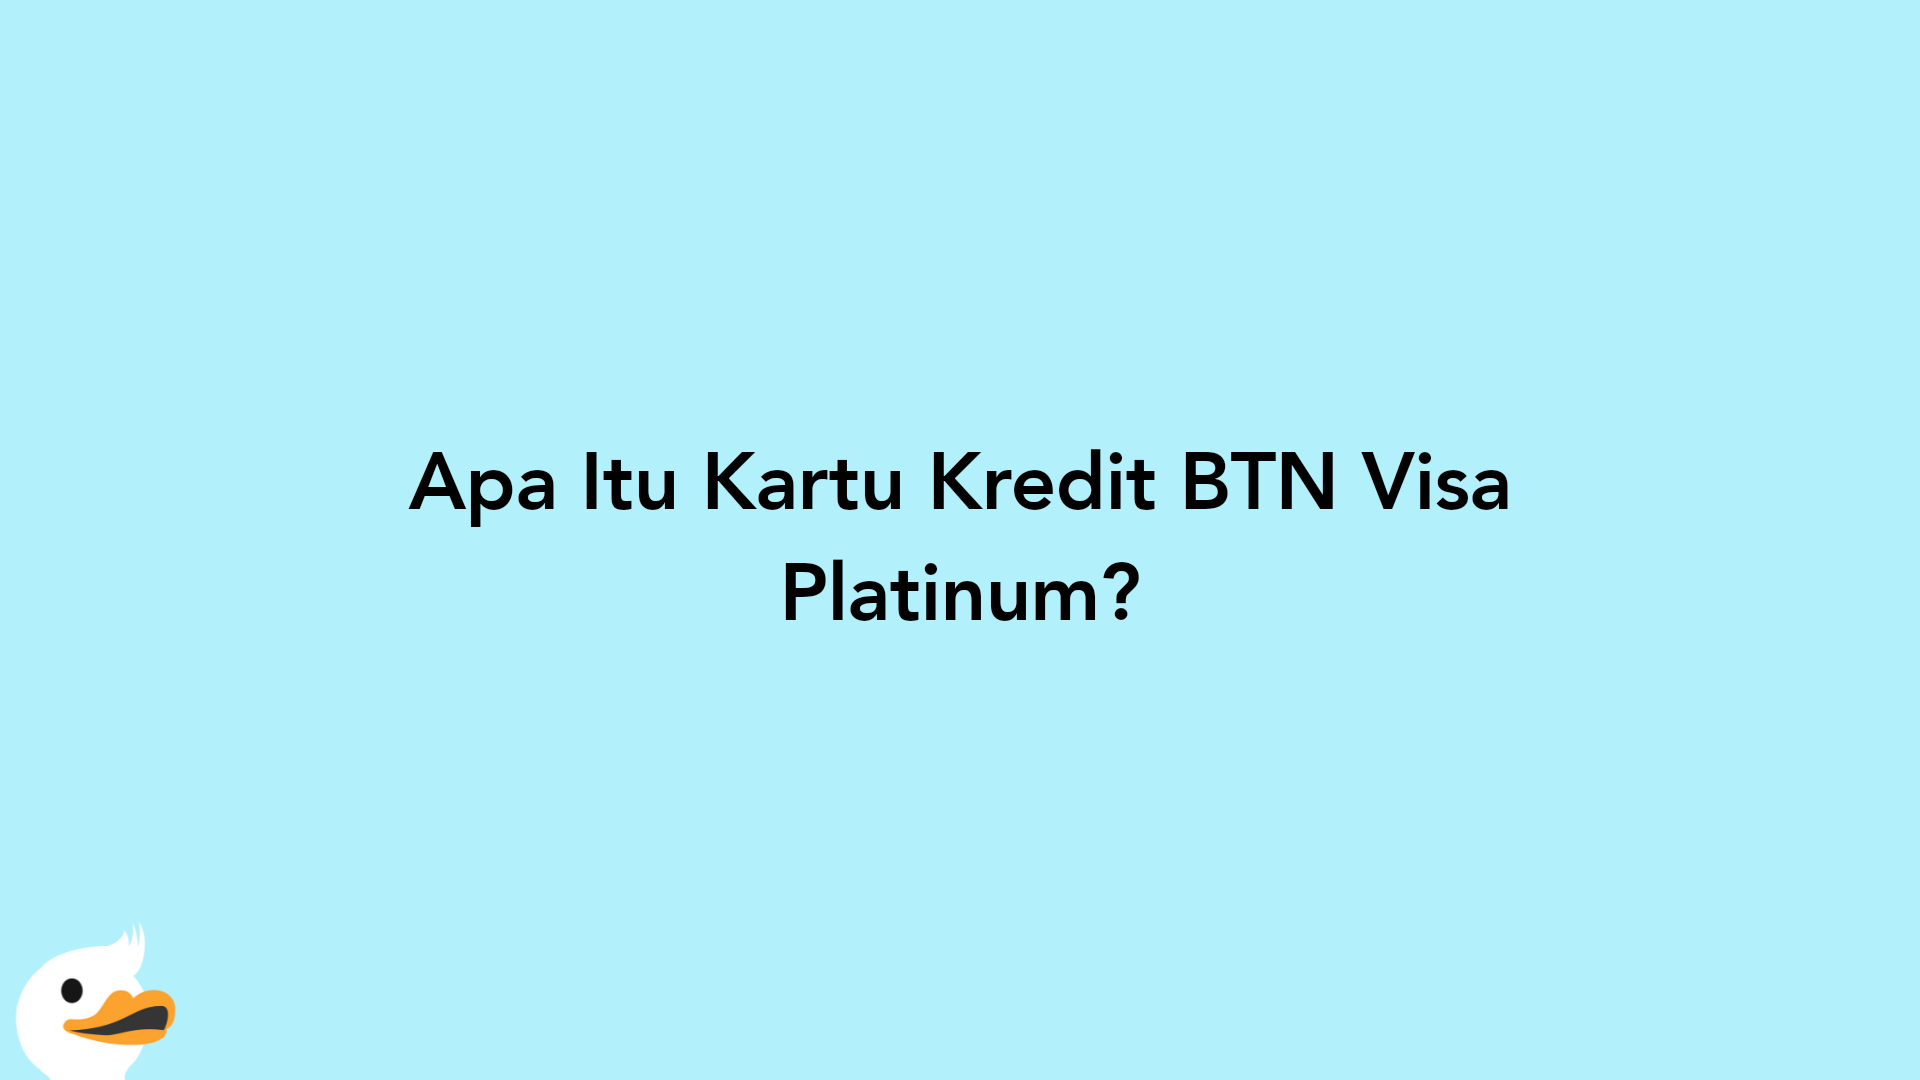 Apa Itu Kartu Kredit BTN Visa Platinum?